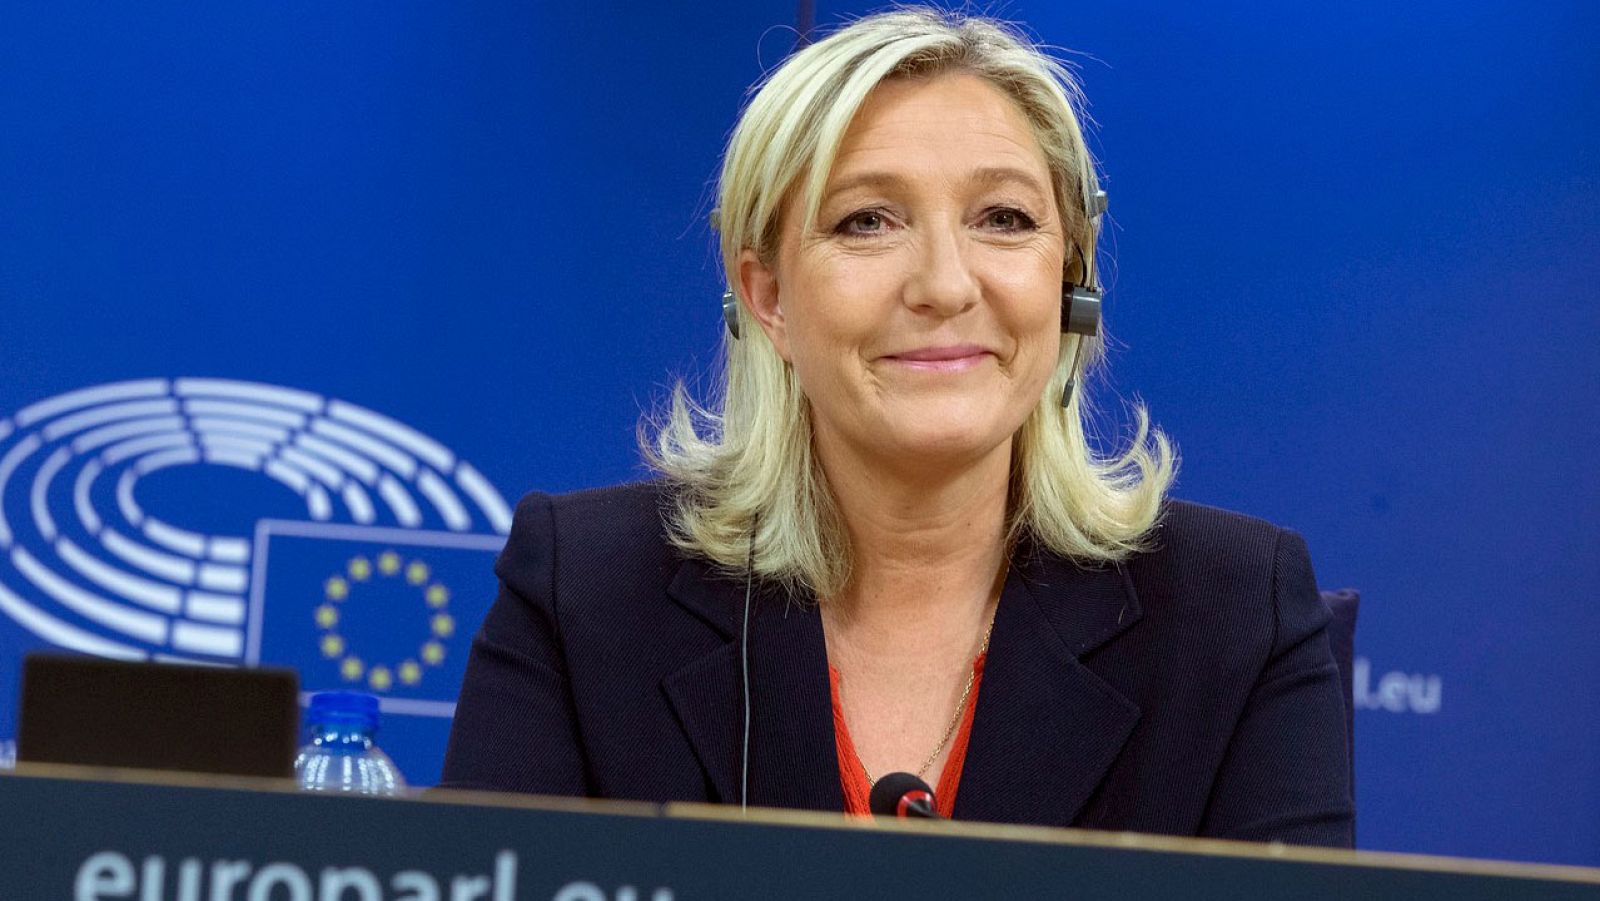 Marine Le Pen da una rueda de prensa para anunciar la formación del grupo "Europa de las Naciones y las Libertades" en el PE.